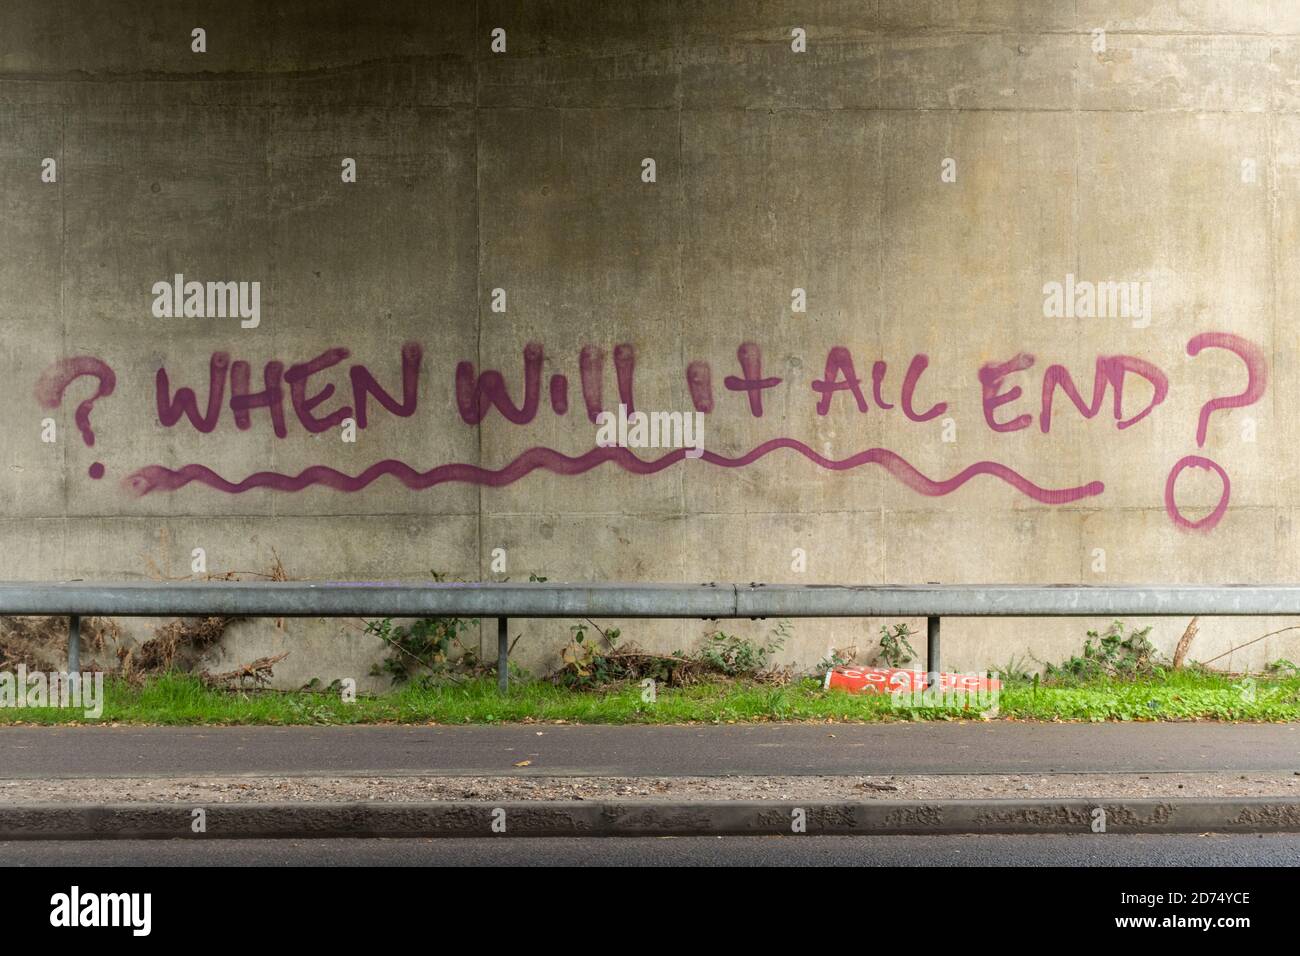 Graffiti fragt, wann alles enden wird? Gemalt unter einer Brücke in Bezug auf die Coronavirus covid-19 Pandemie im Jahr 2020, Großbritannien Stockfoto